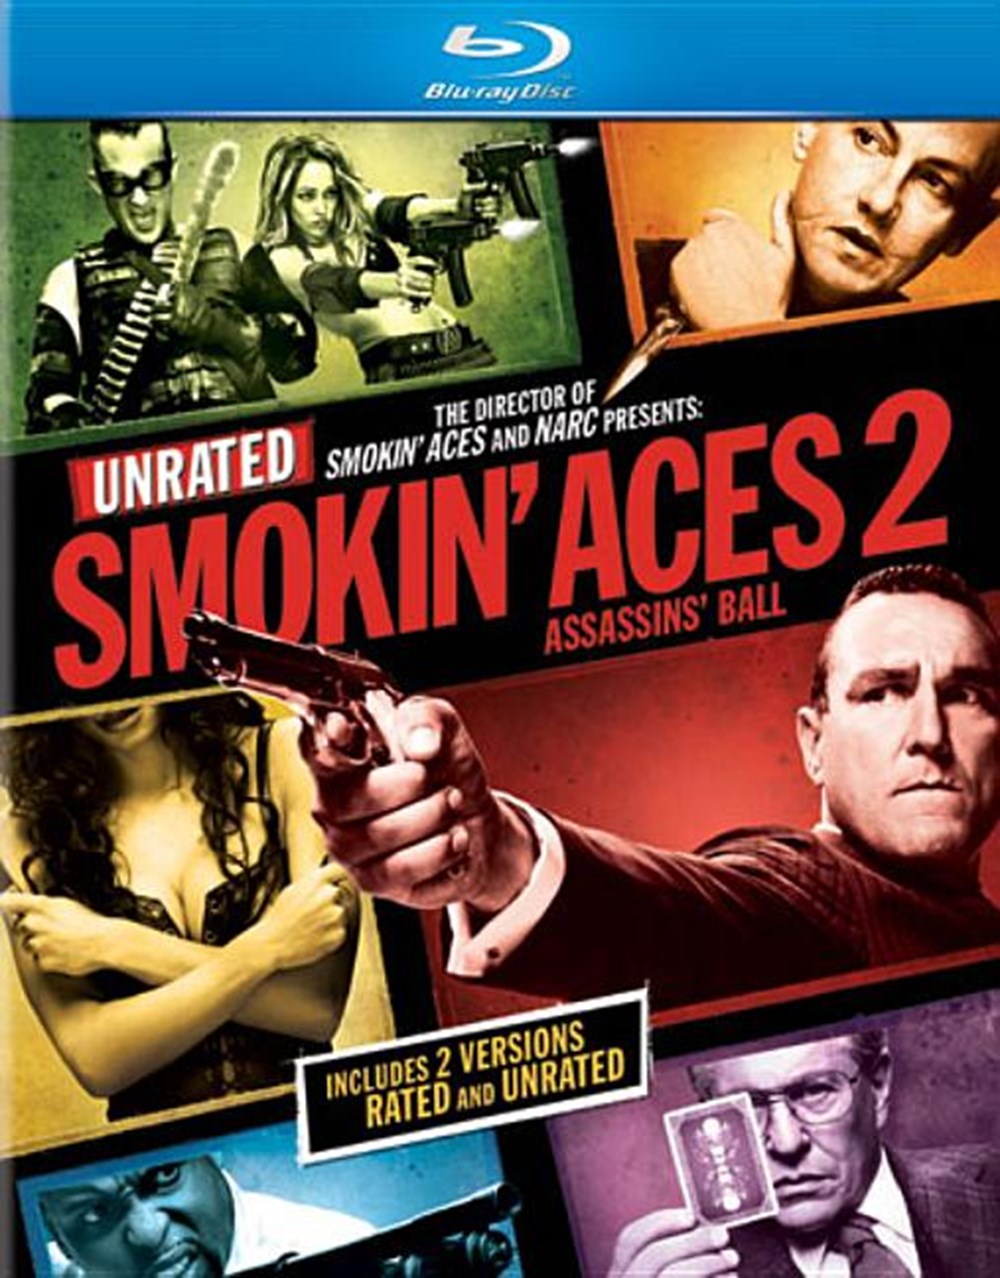 Smokin' Aces 2 Assassins' Ball